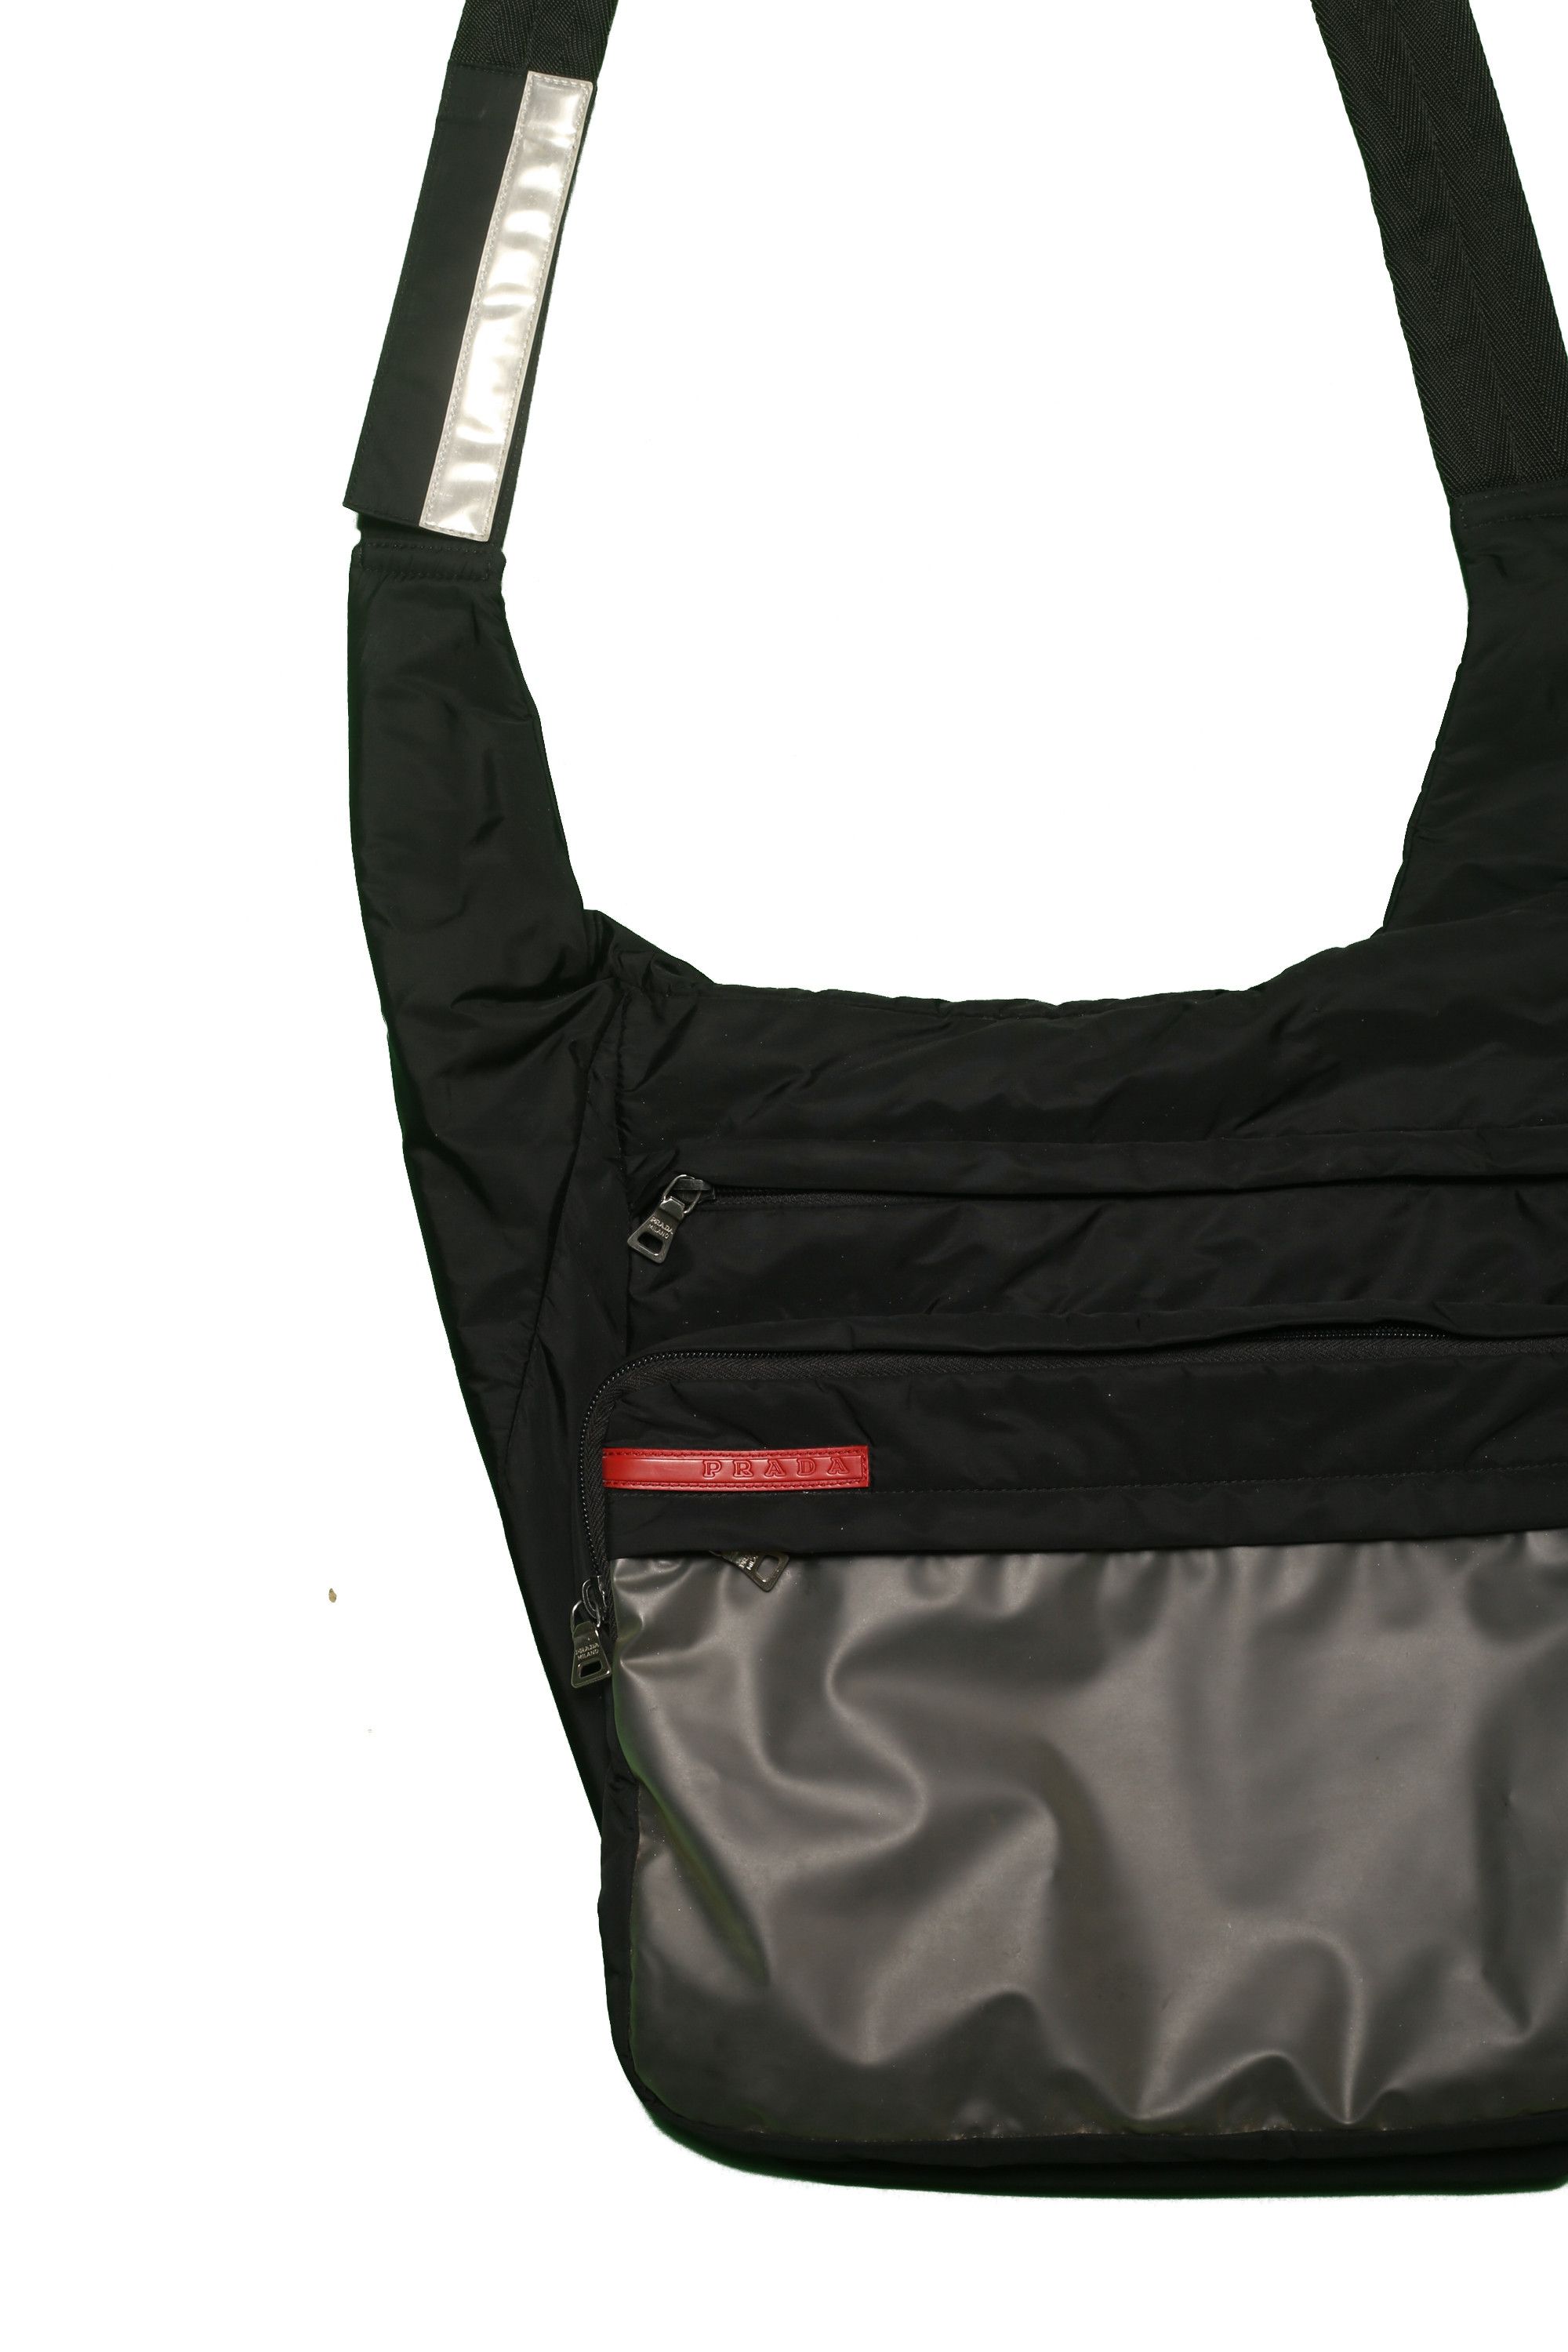 Prada Prada Transparent Shoulder Bag Size ONE SIZE - 3 Preview